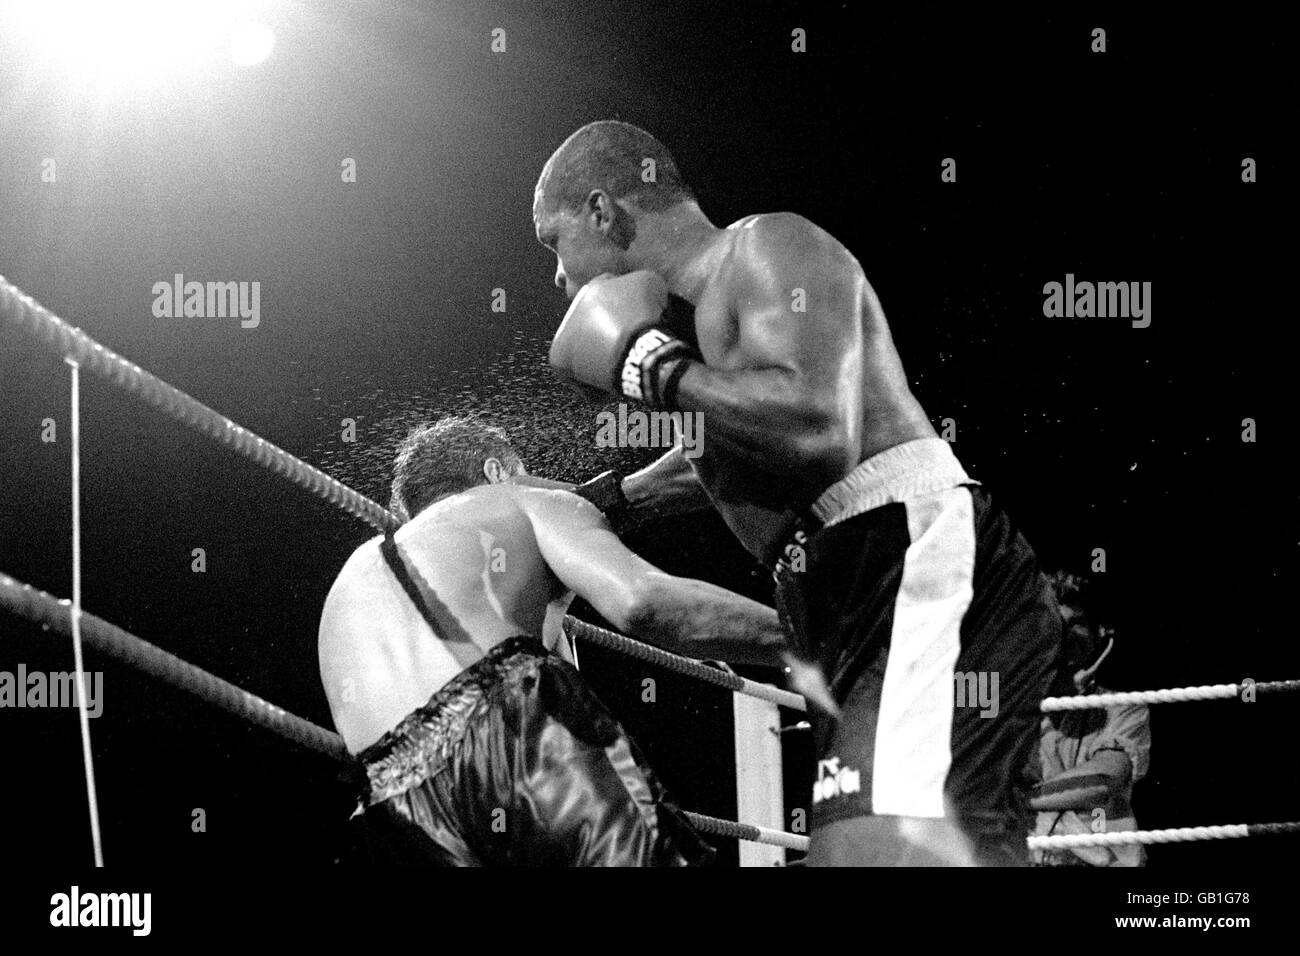 Boxen - WBC Cruiserweight Championship - Carlos de Leon / Sammy Reeson - London Arena. Sammy Reeson, links, nimmt Carlos de Leon einen soliden Schlag. Stockfoto